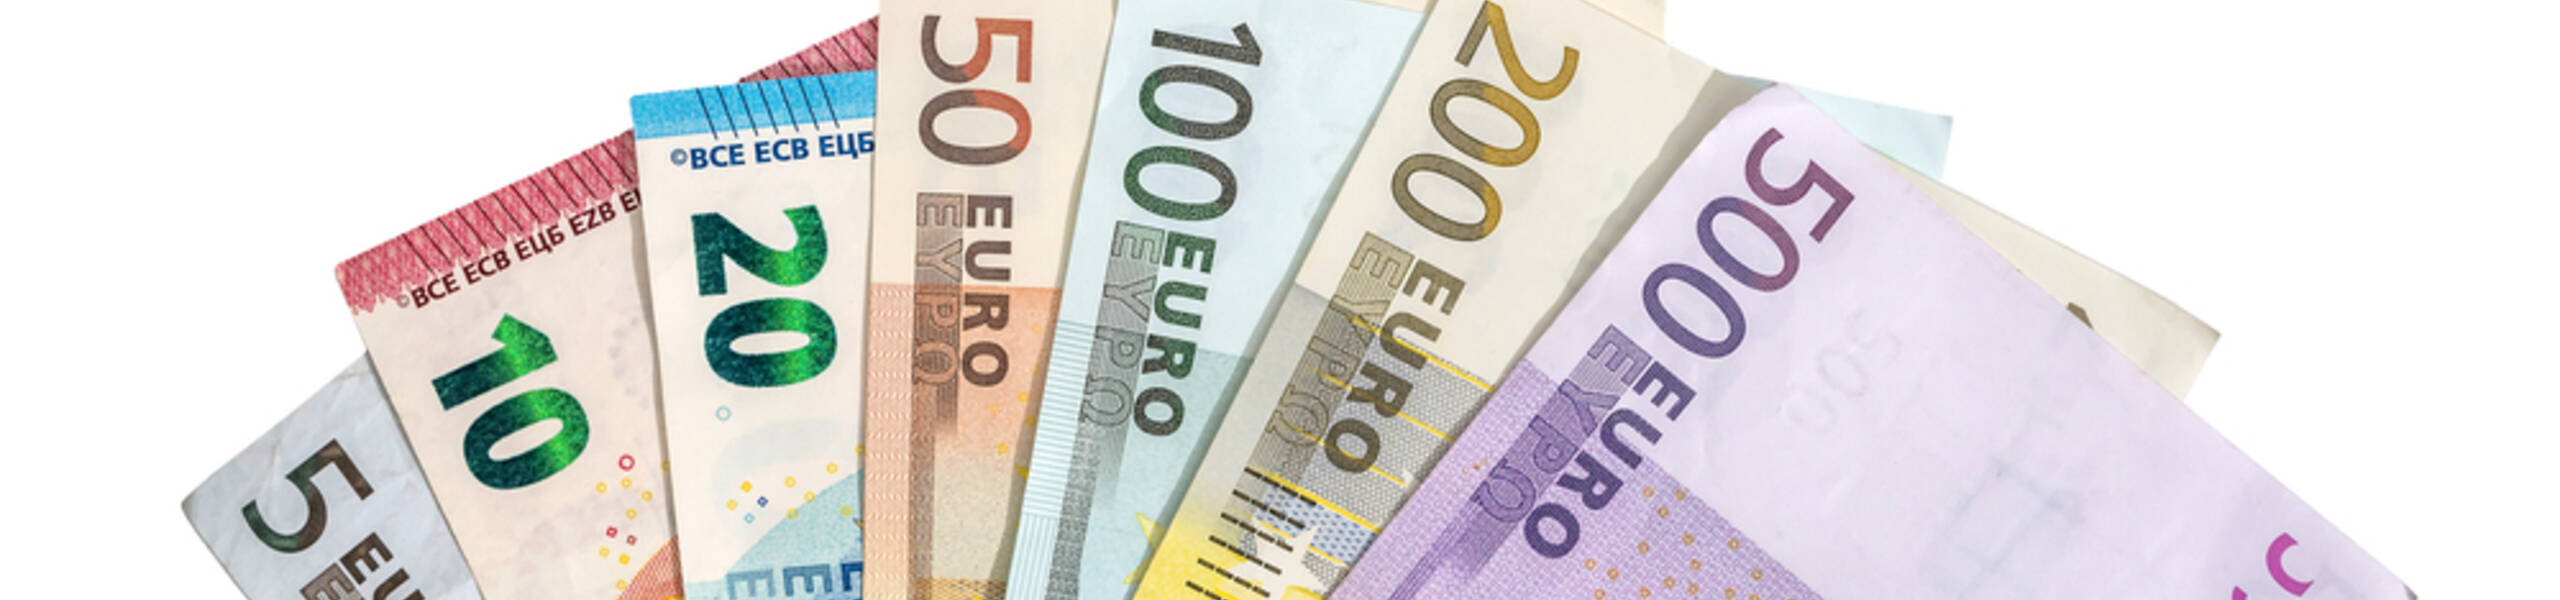 أوامر شراء اليورو تحقق اكثر من 70 نقطة 